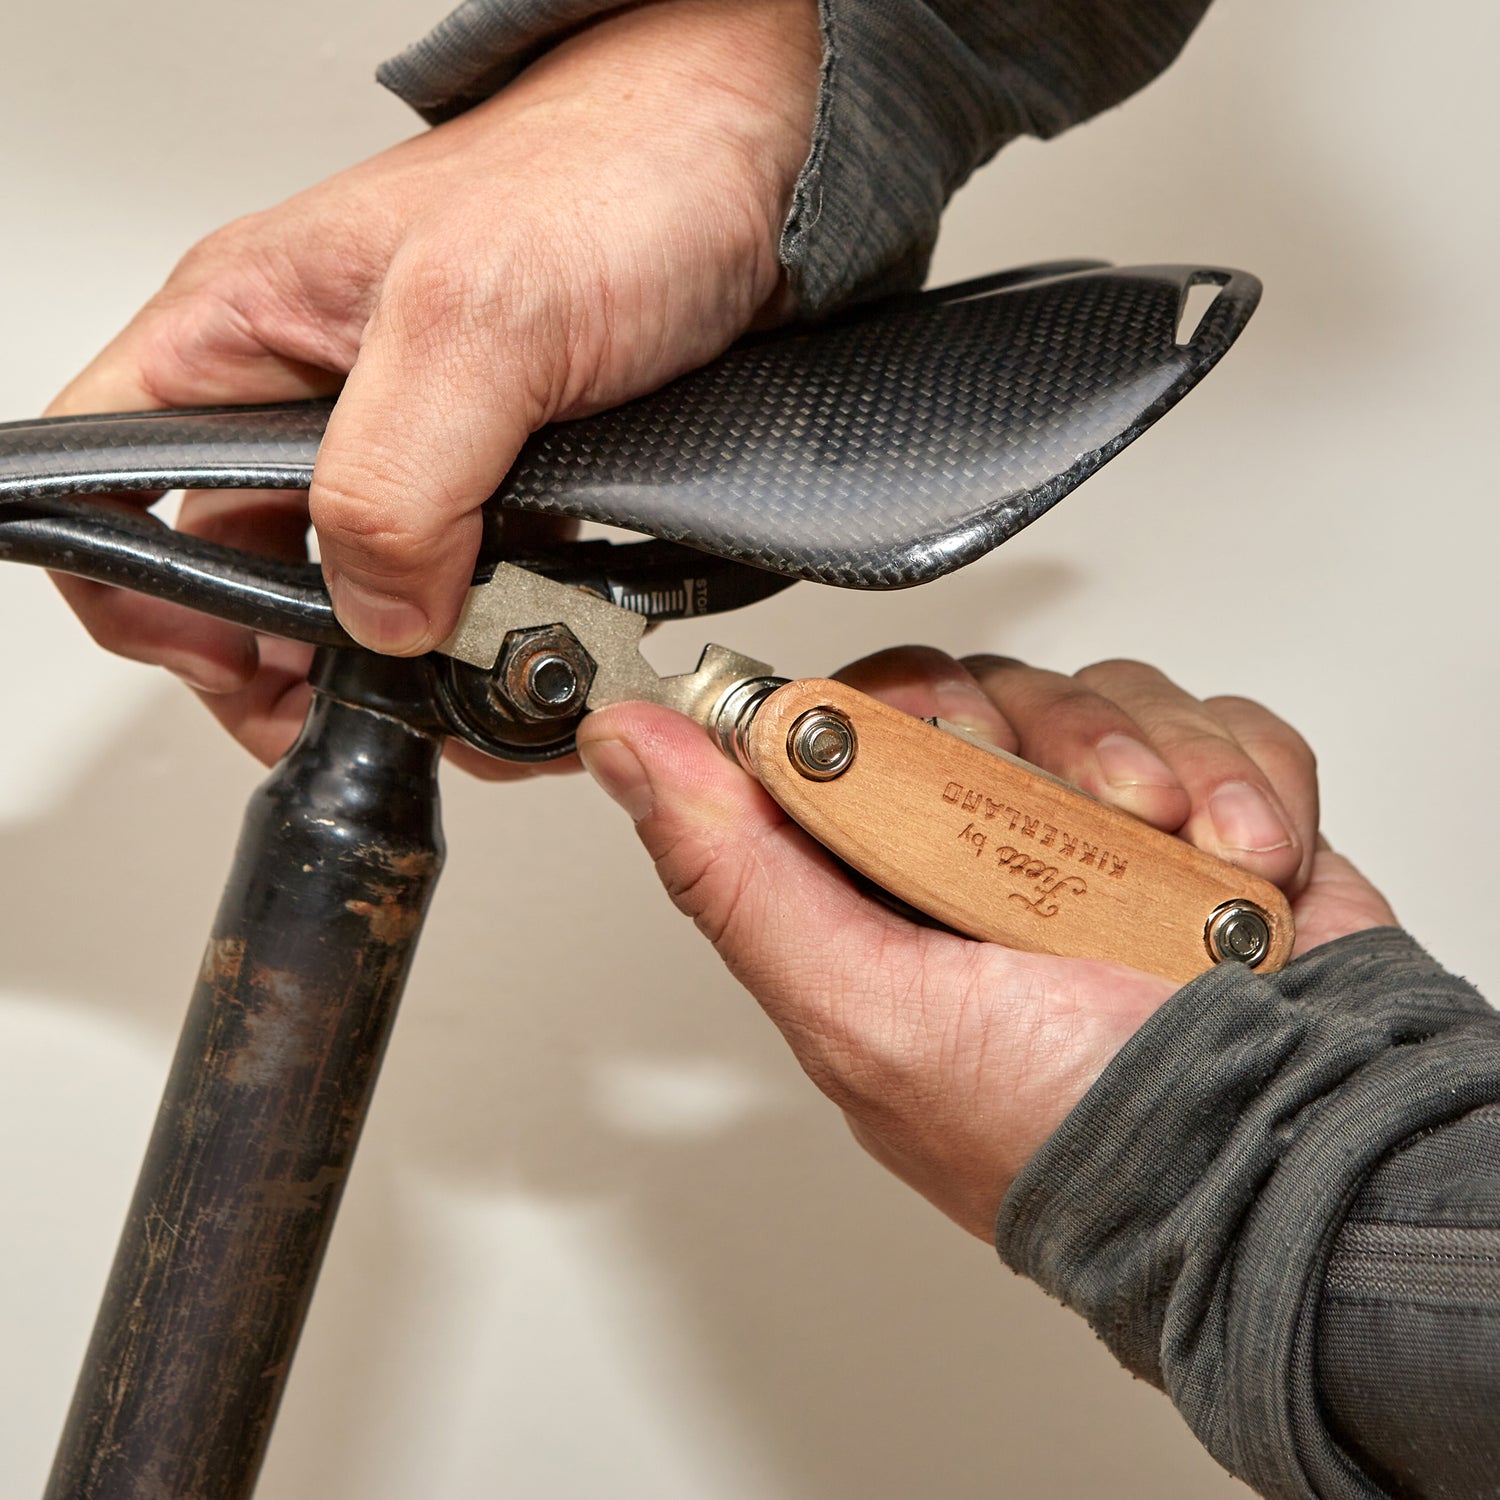 Kit de réparation de vélo en étain – Kikkerland Design Inc